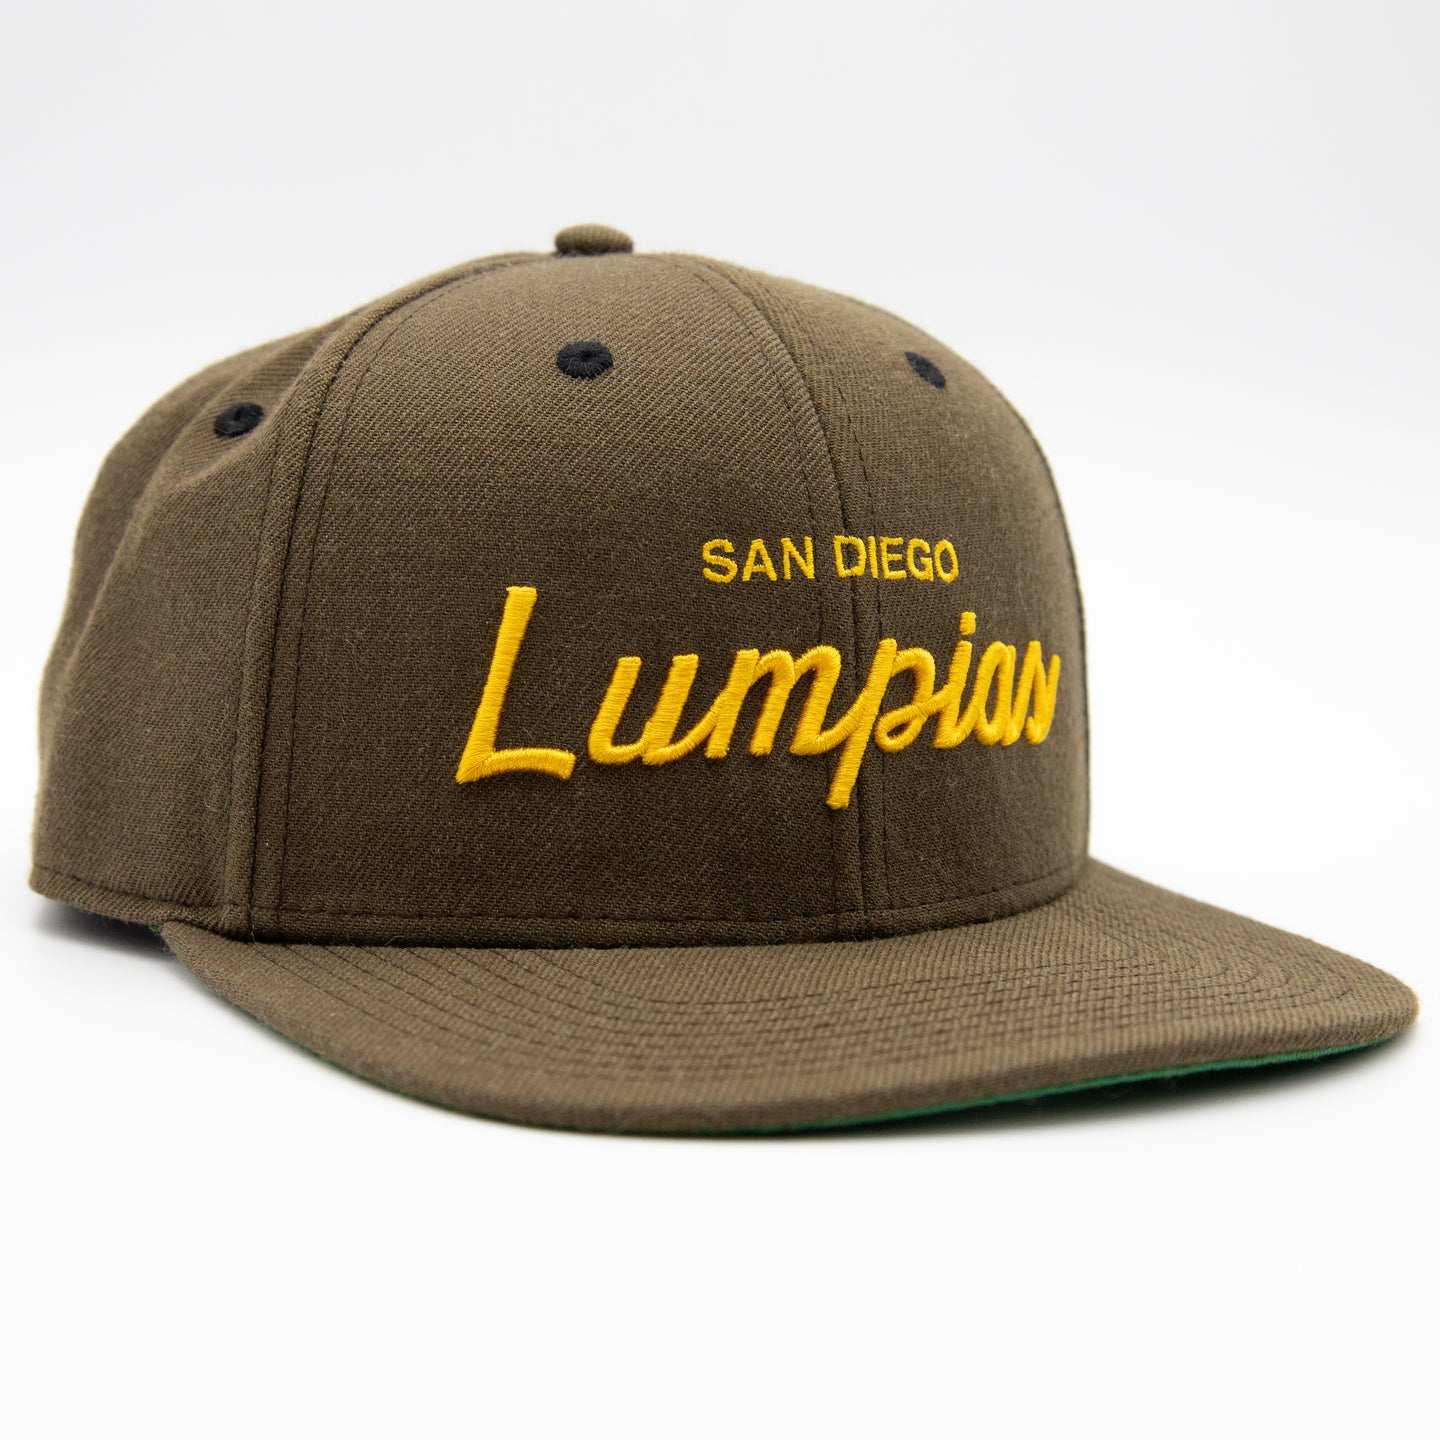 San Diego Lumpias Snapback (Padres Inspired)